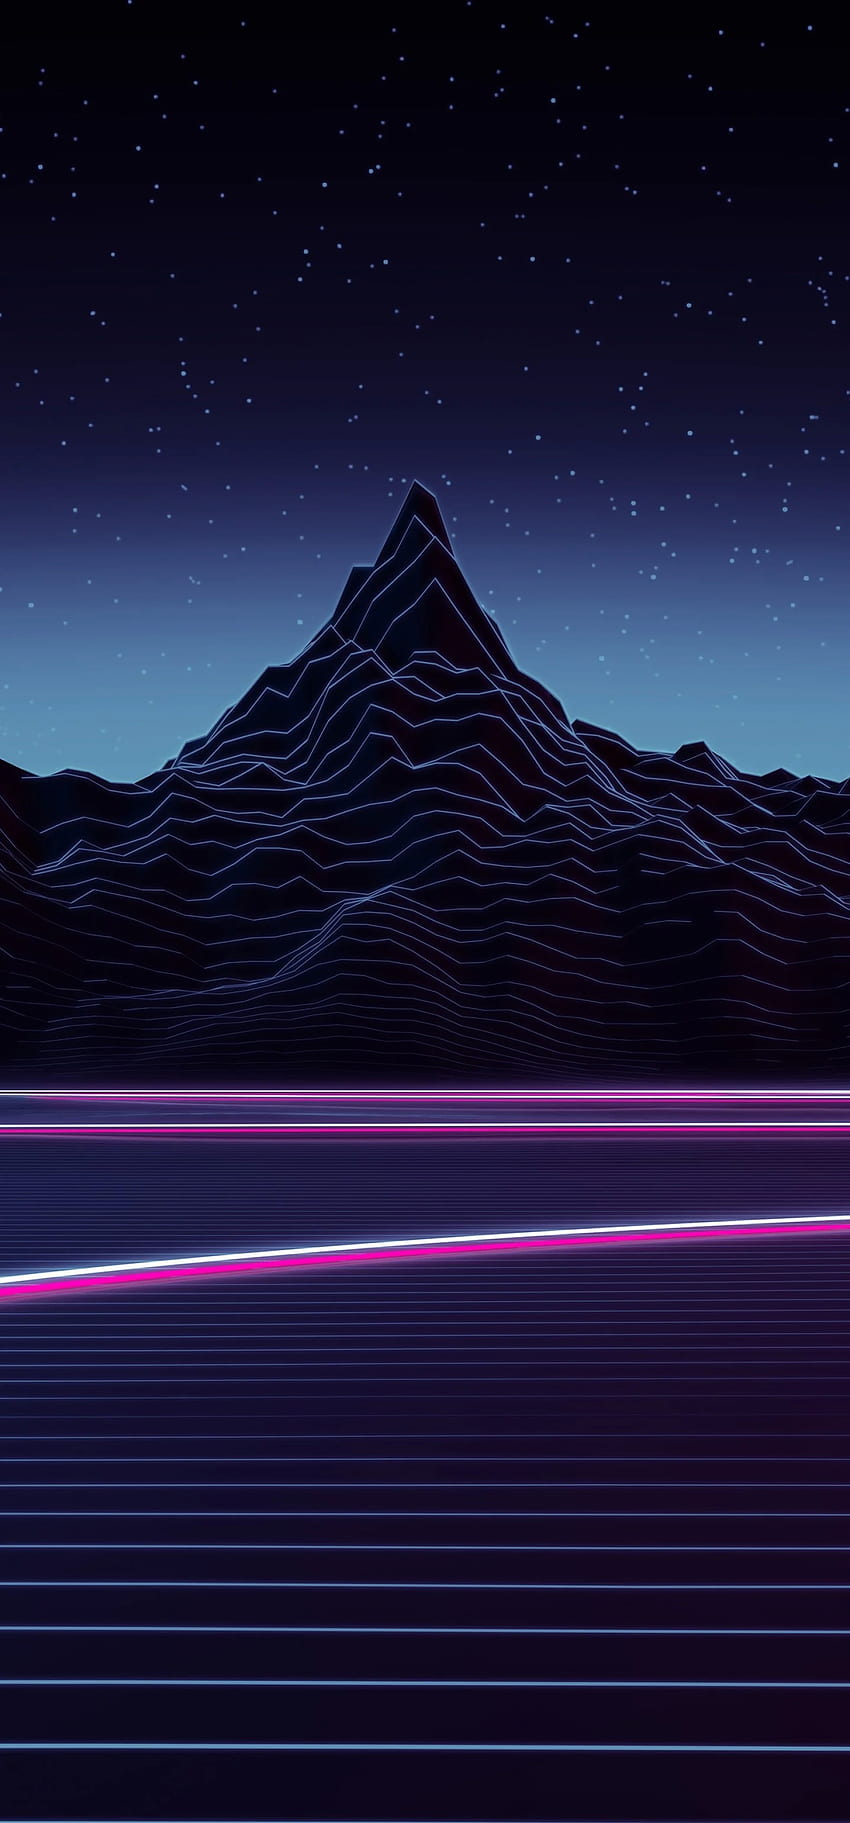 Khám phá bộ sưu tập hình nền Synthwave, Landscape, Neon Light, Mountain, Retrowave cực kỳ độc đáo và ấn tượng cho Samsung. Tận hưởng không gian sống sống động và đầy sáng tạo với những hình ảnh tuyệt vời này!